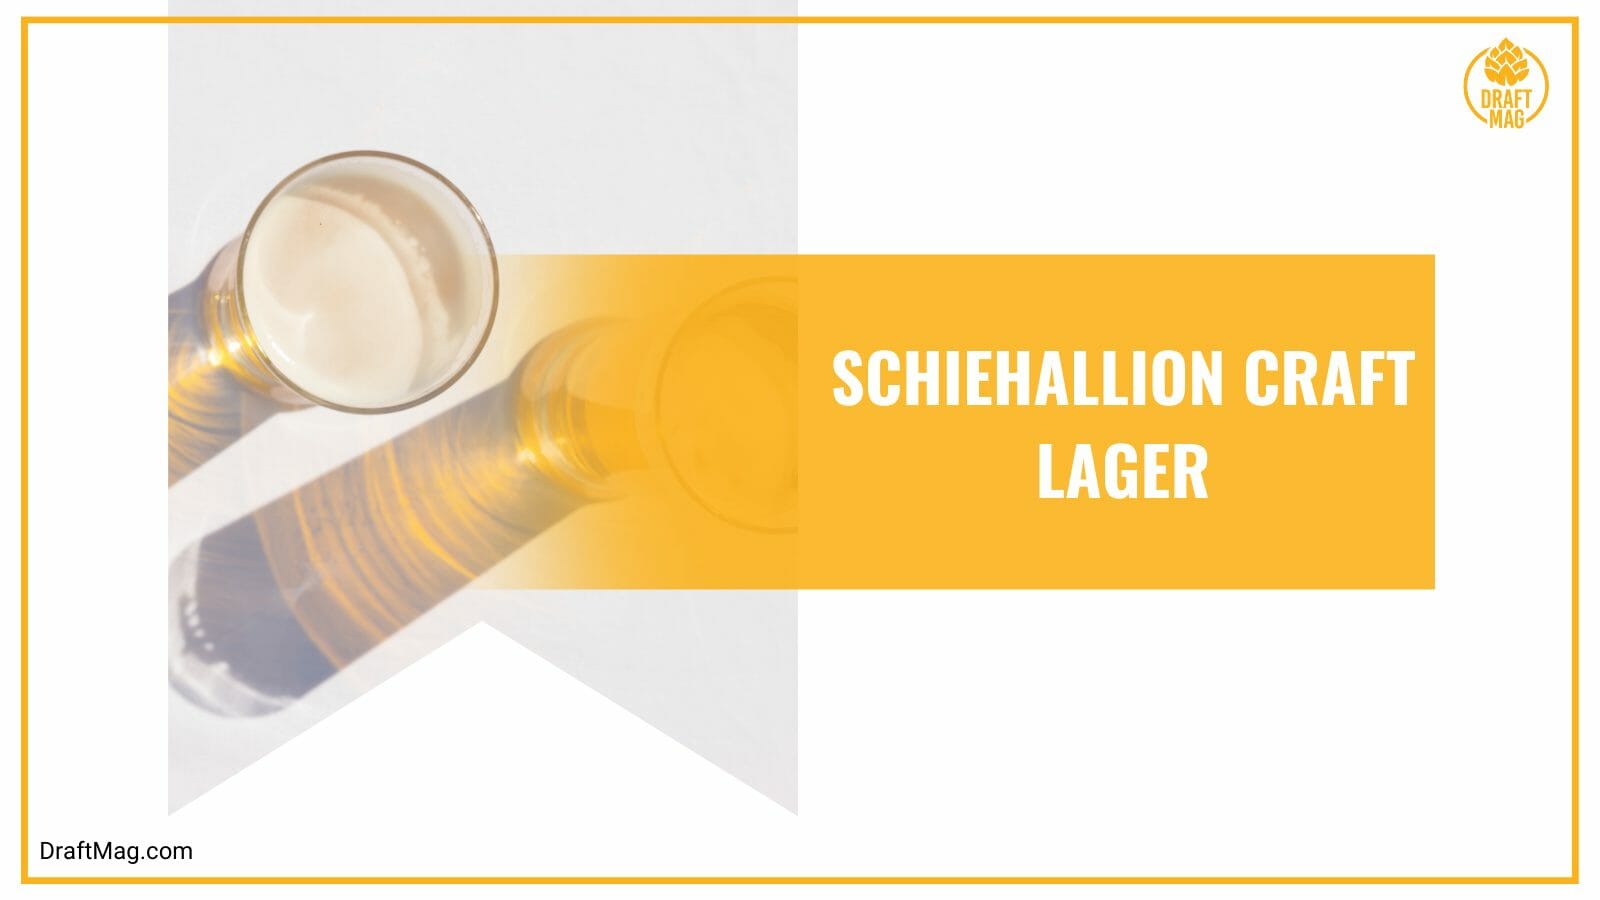 Schiehallion craft lager top british beer